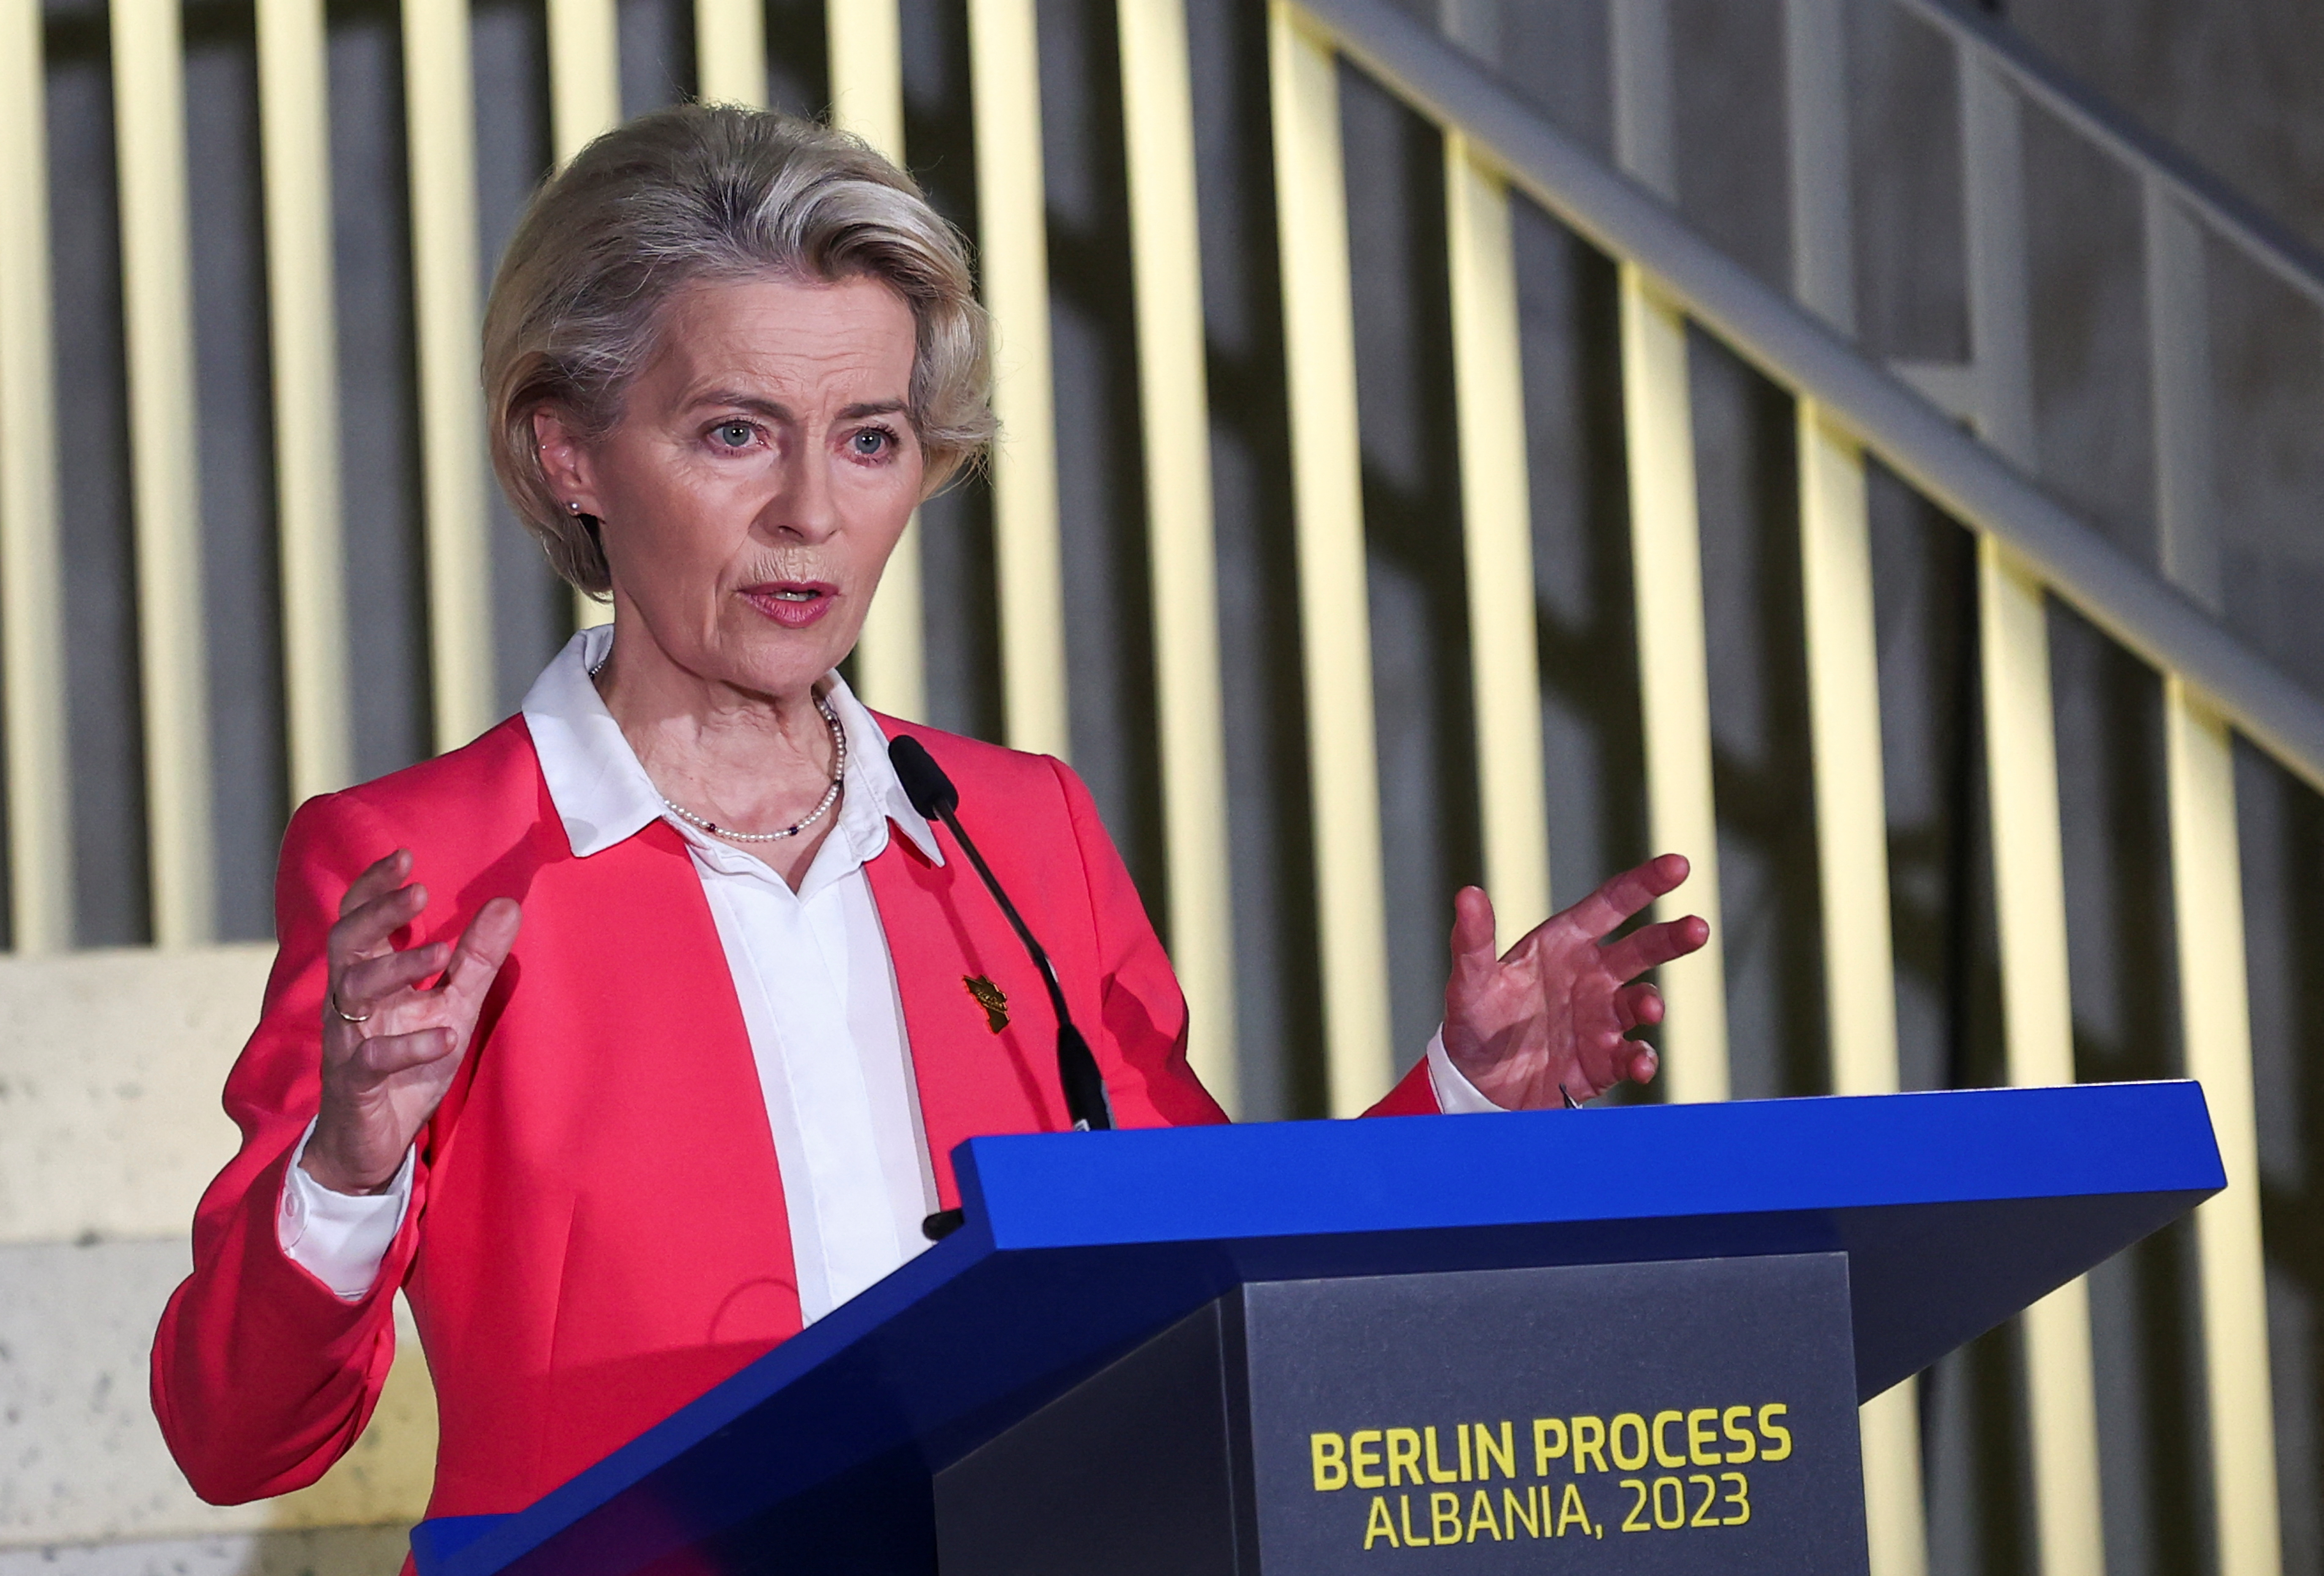 Berlin Process, leaders' summit in Tirana